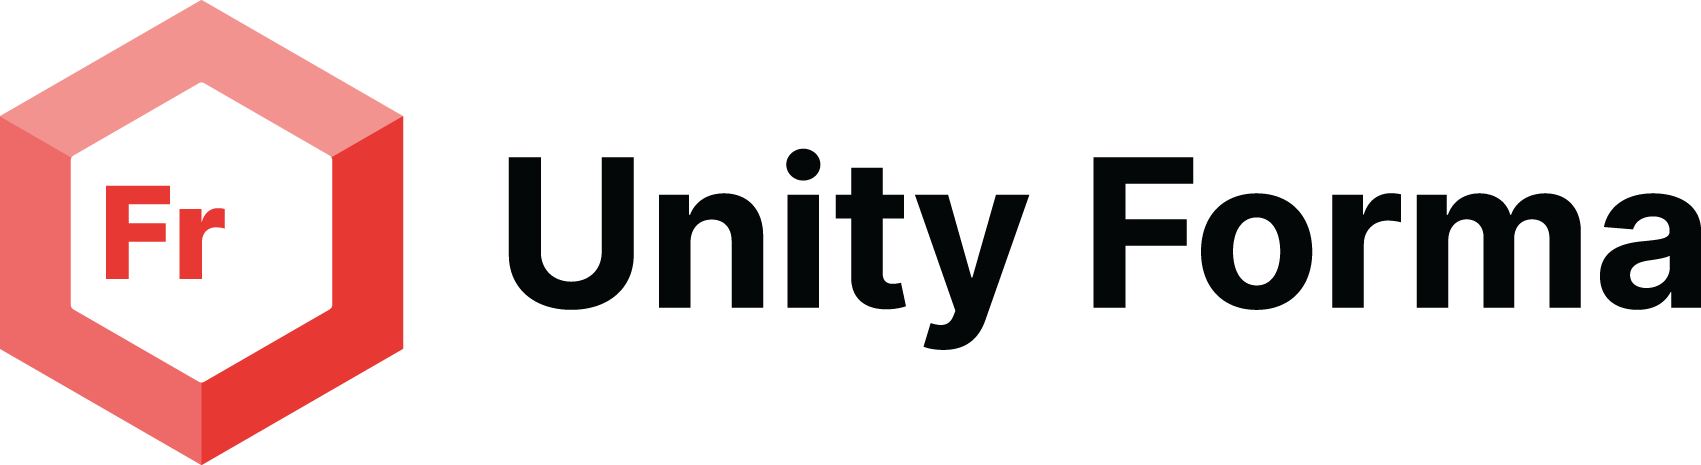 Unity Pixyz Logo Black RGB